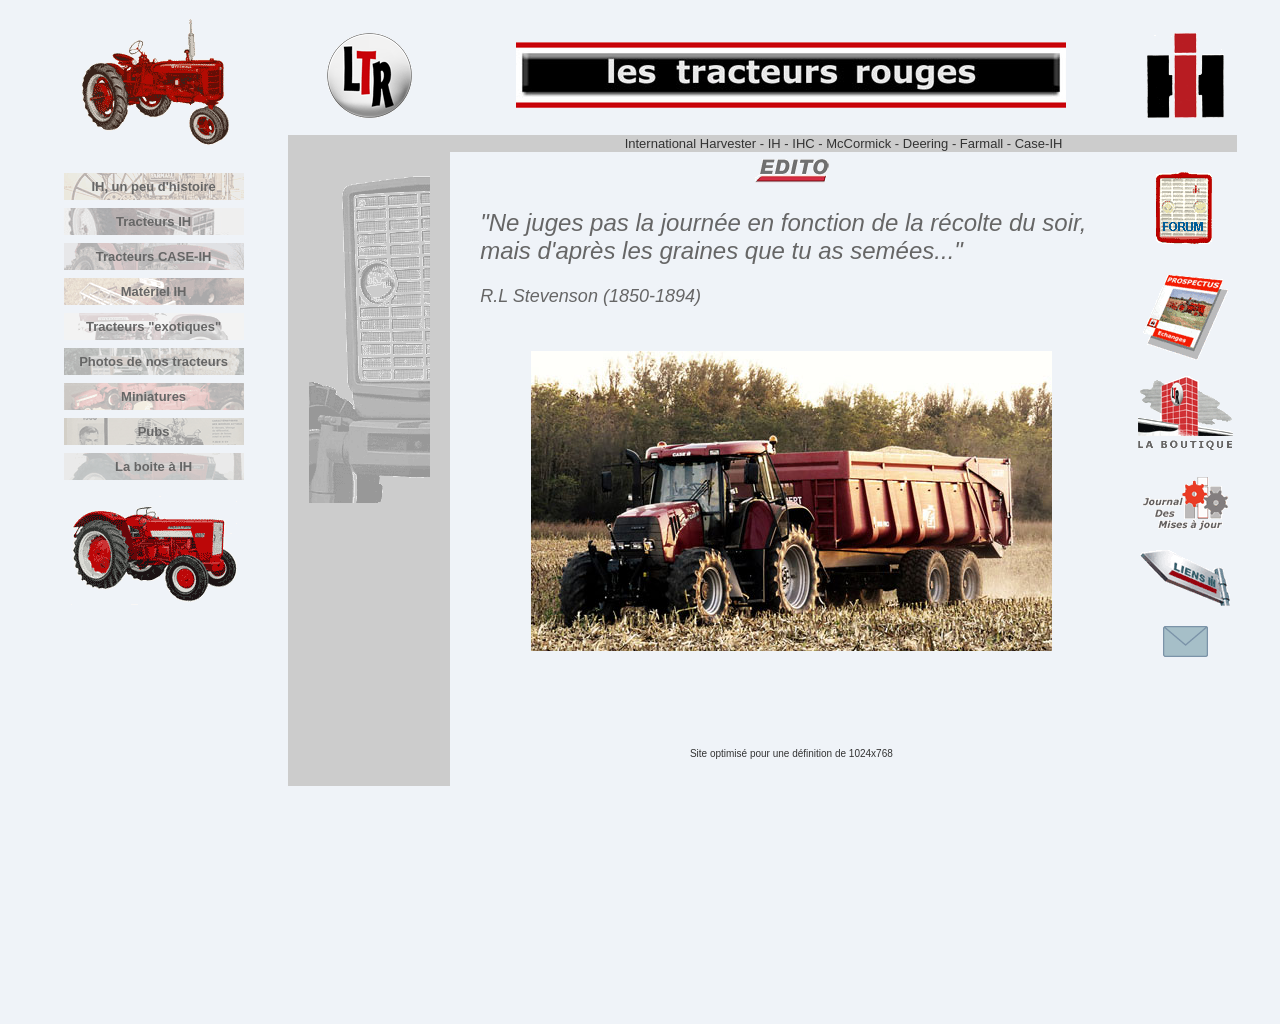 www.lestracteursrouges.com